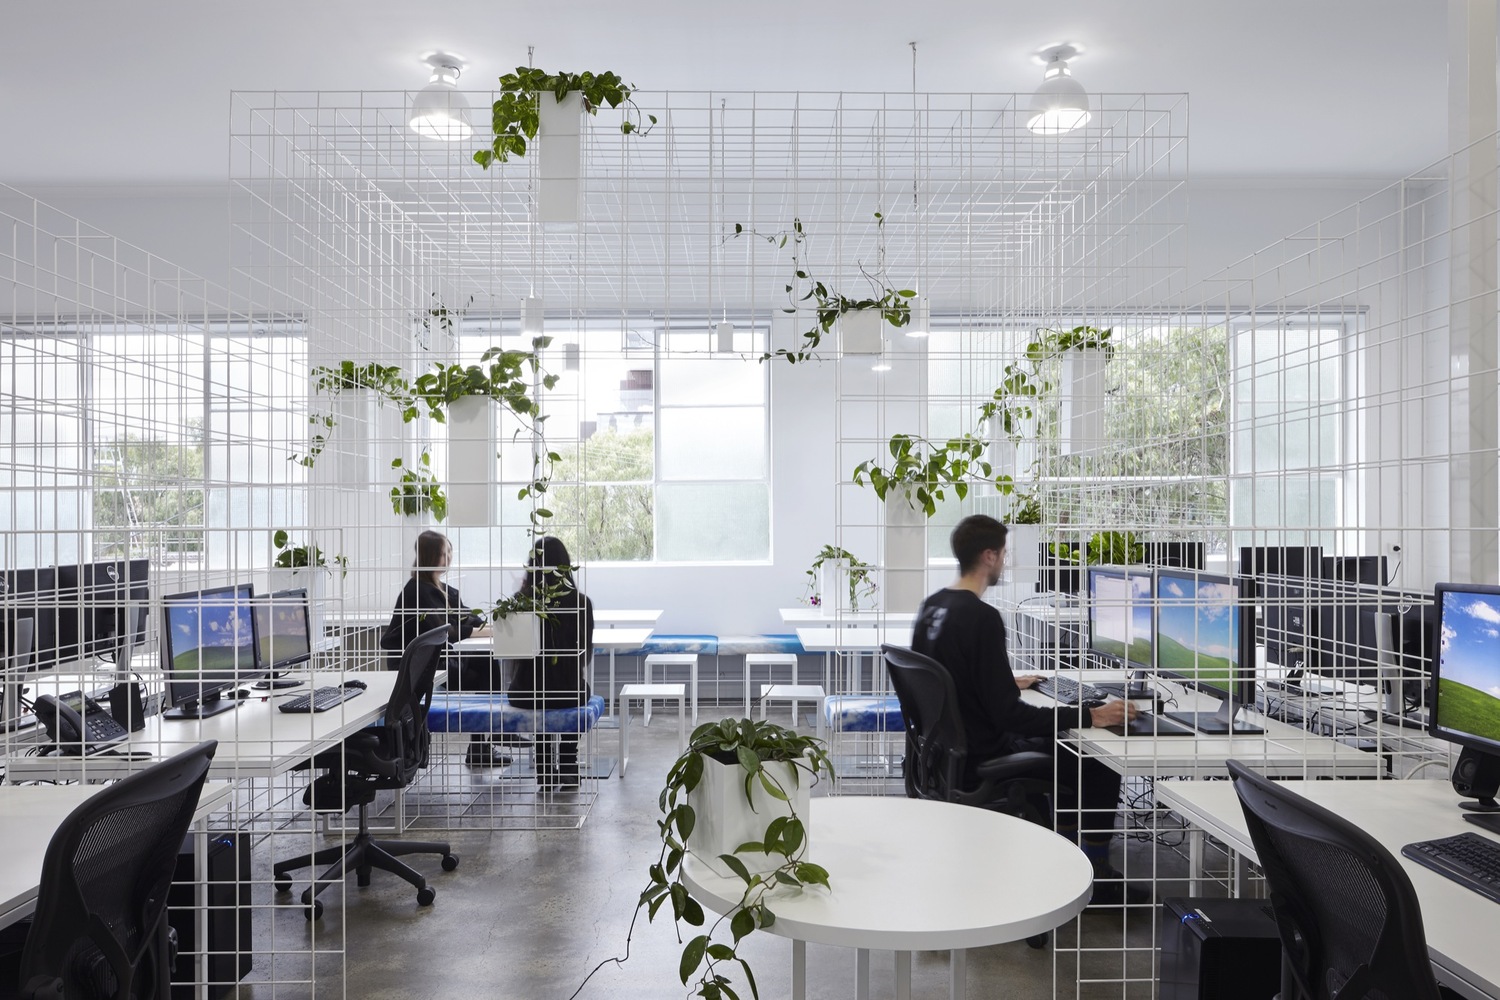   Văn phòng làm việc nhiều cây xanh, thiết kế đẹp mắt sẽ tạo cảm hứng cho nhân viên (Ảnh Internet)  